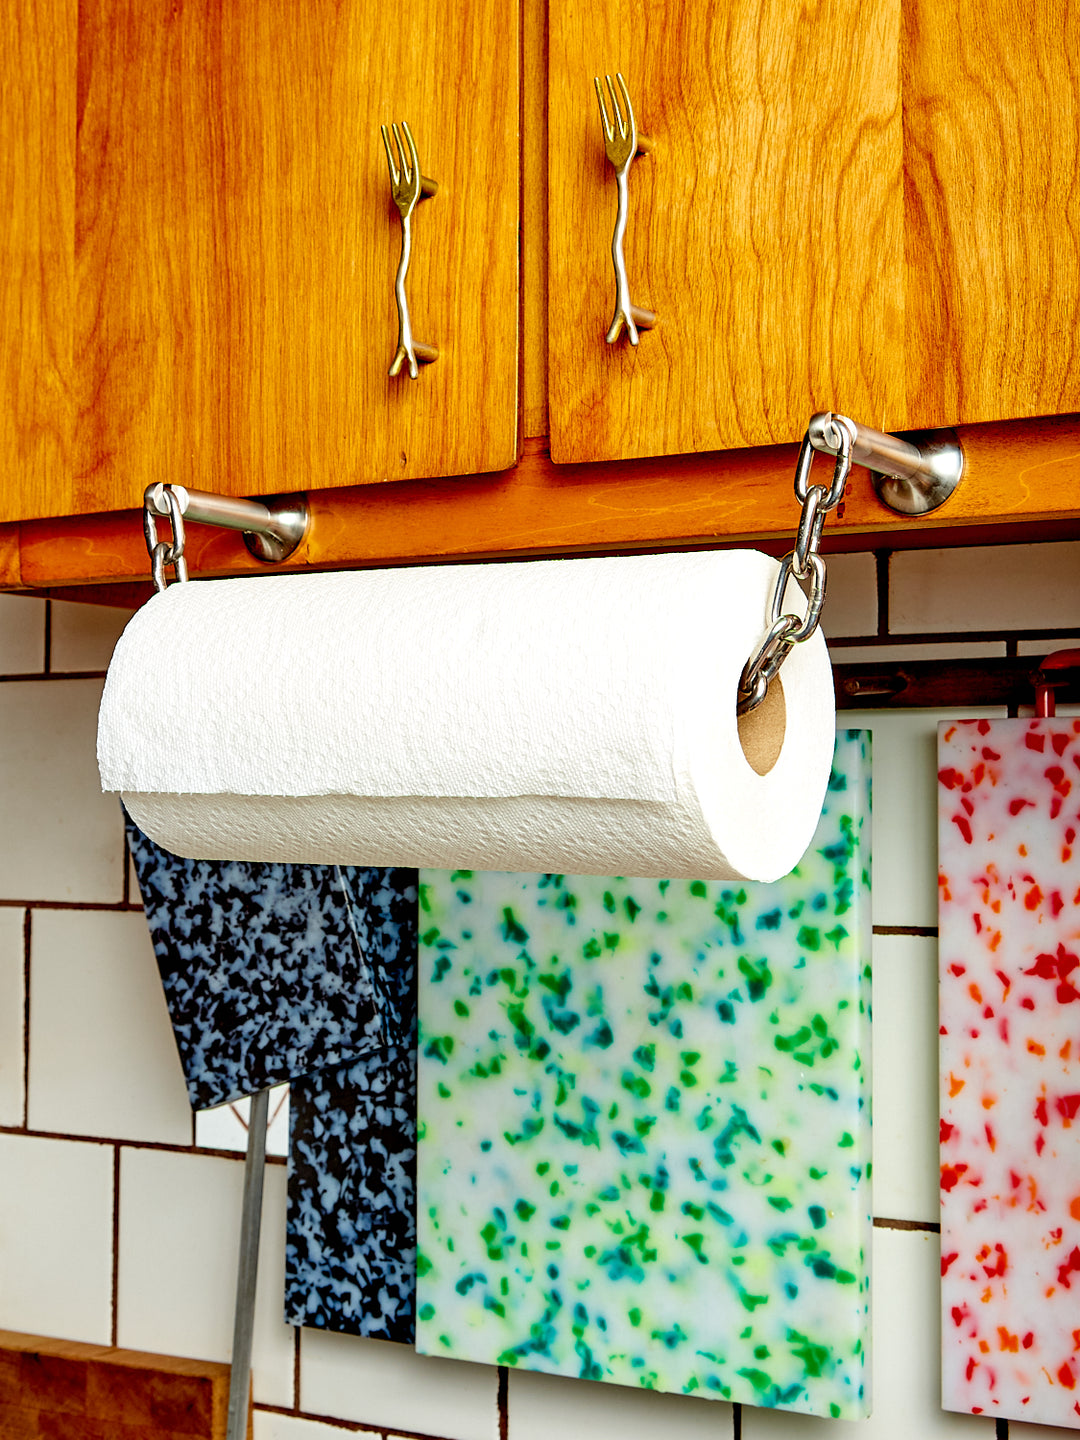 Y19142 - Elegant Paper Towel Holder - CED